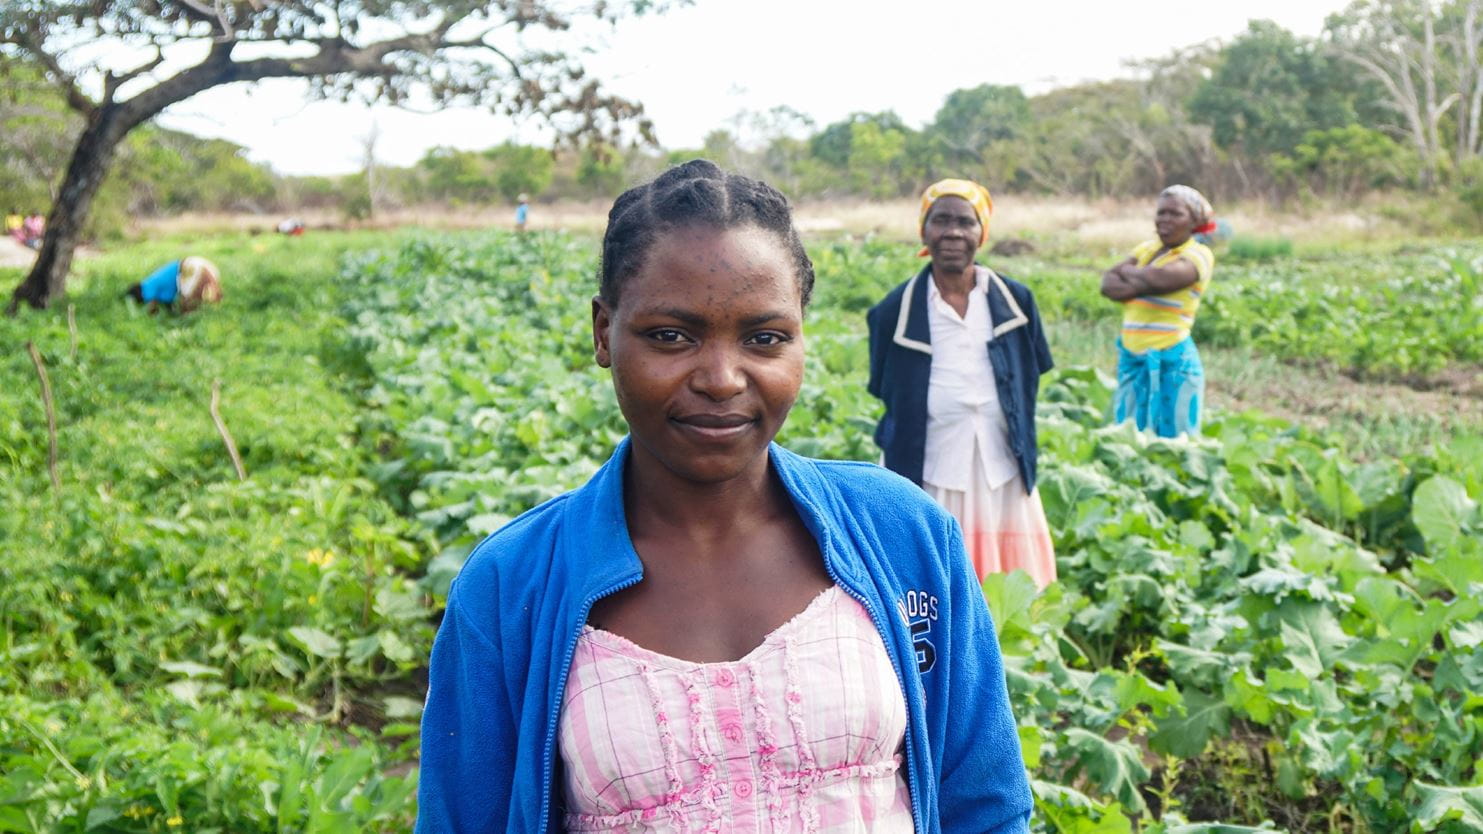 Una mujer sonríe en medio de un campo de cultivos en Mozambique. Atrás se observan otras dos mujeres